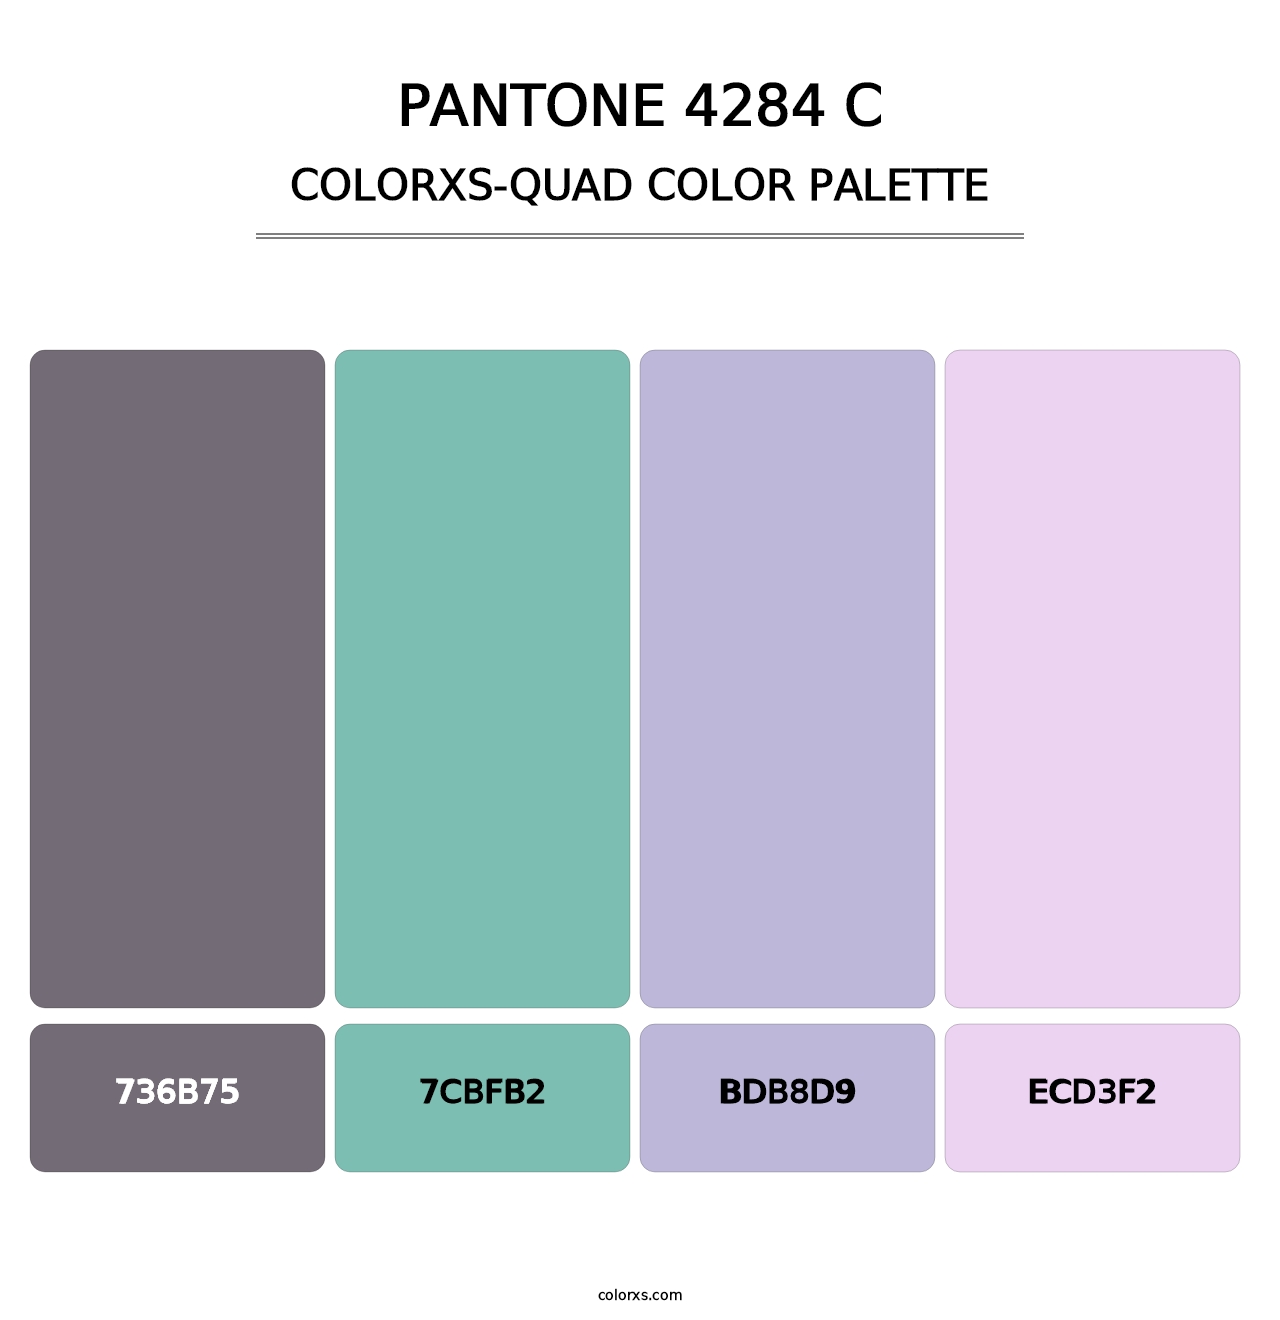 PANTONE 4284 C - Colorxs Quad Palette